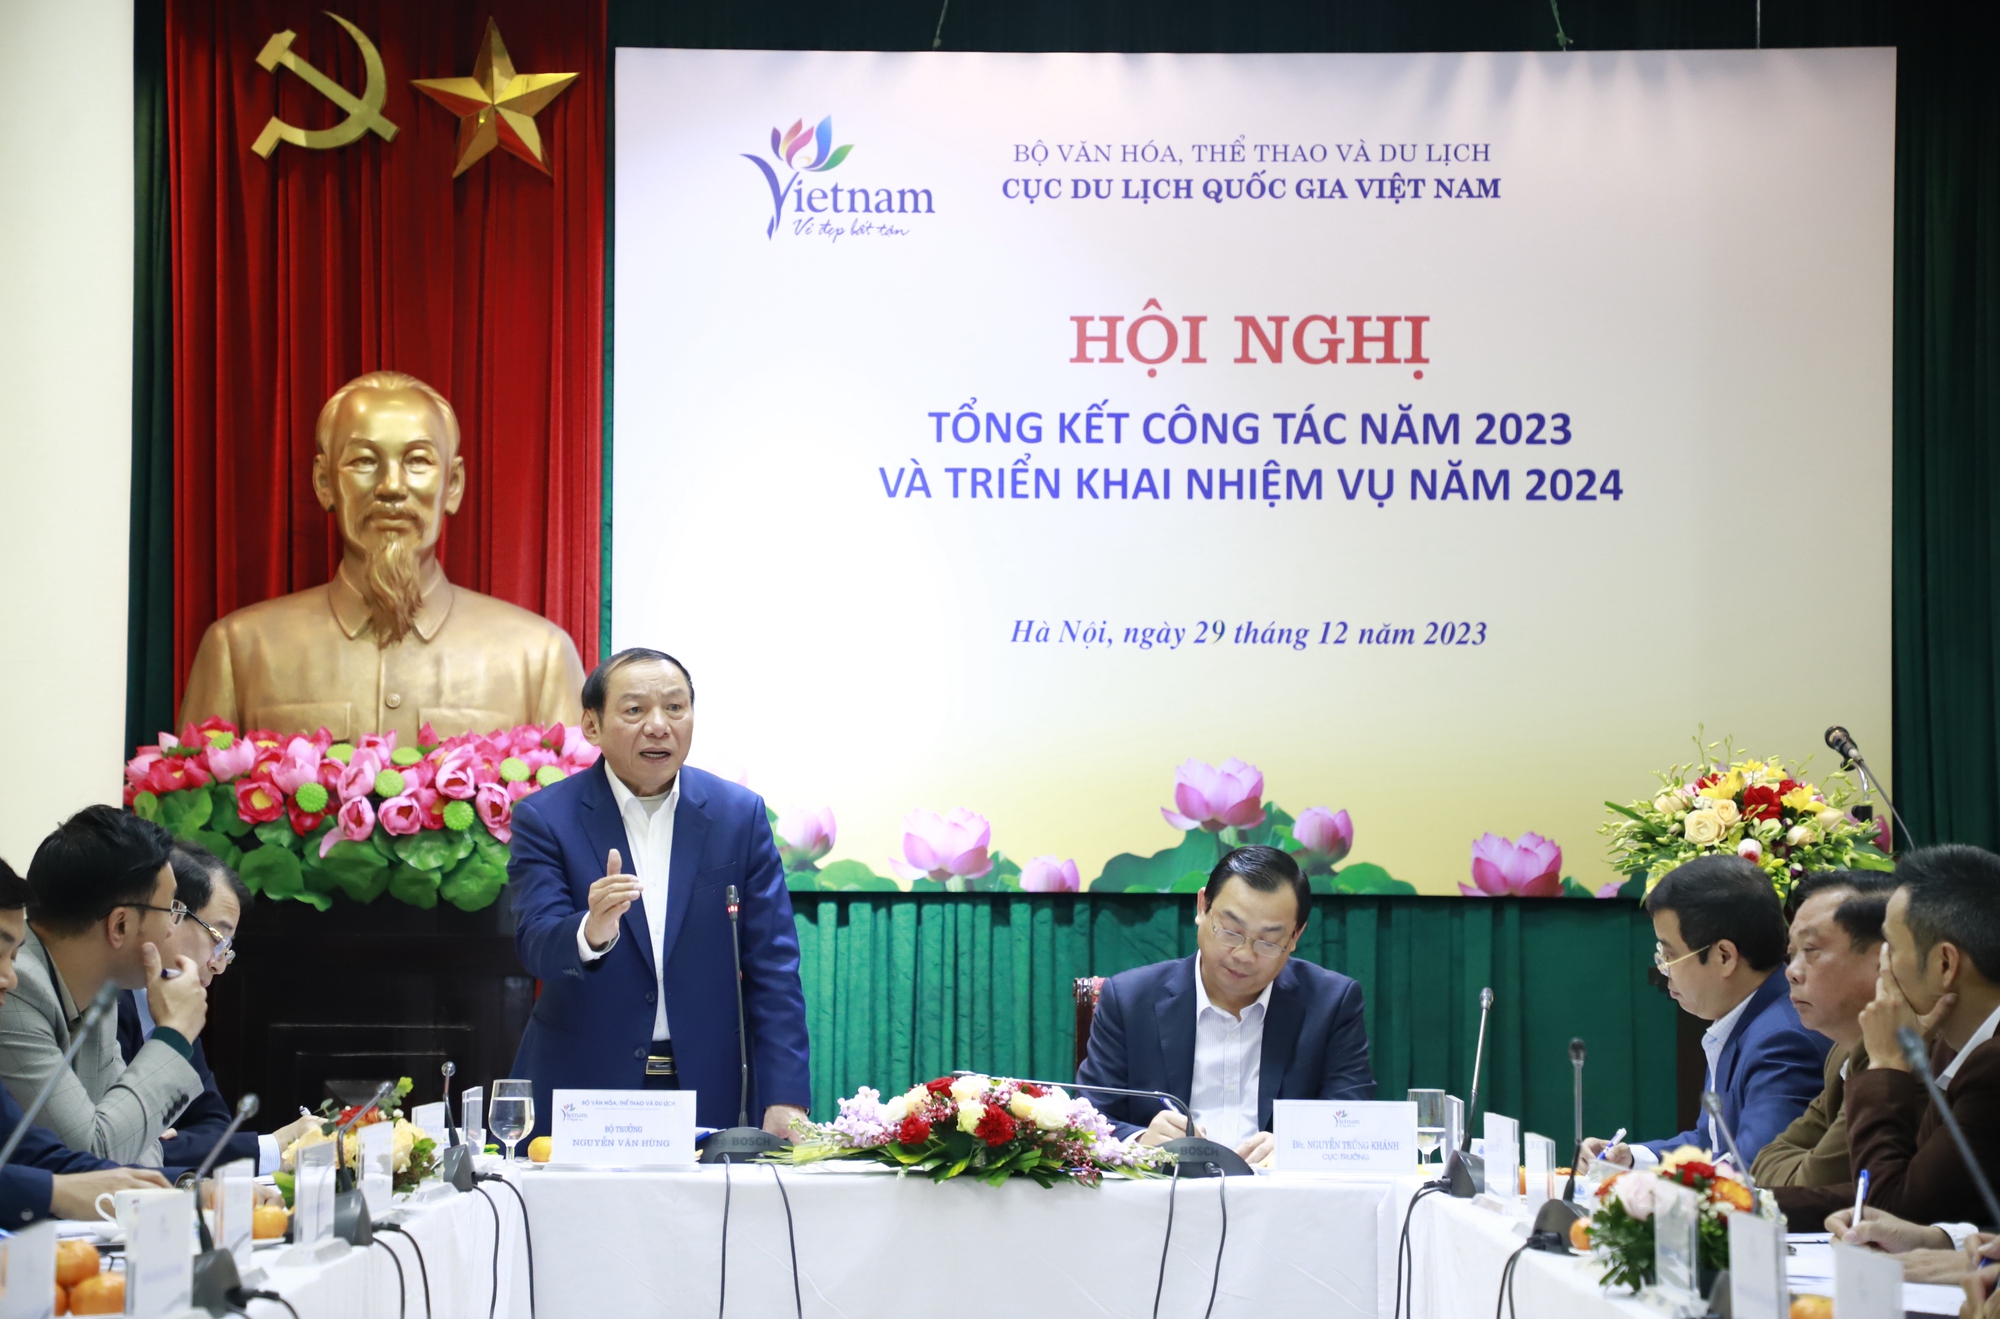 Bộ trưởng Nguyễn Văn Hùng nêu 5 từ khóa phát triển Cục Du lịch quốc gia Việt Nam - Ảnh 1.